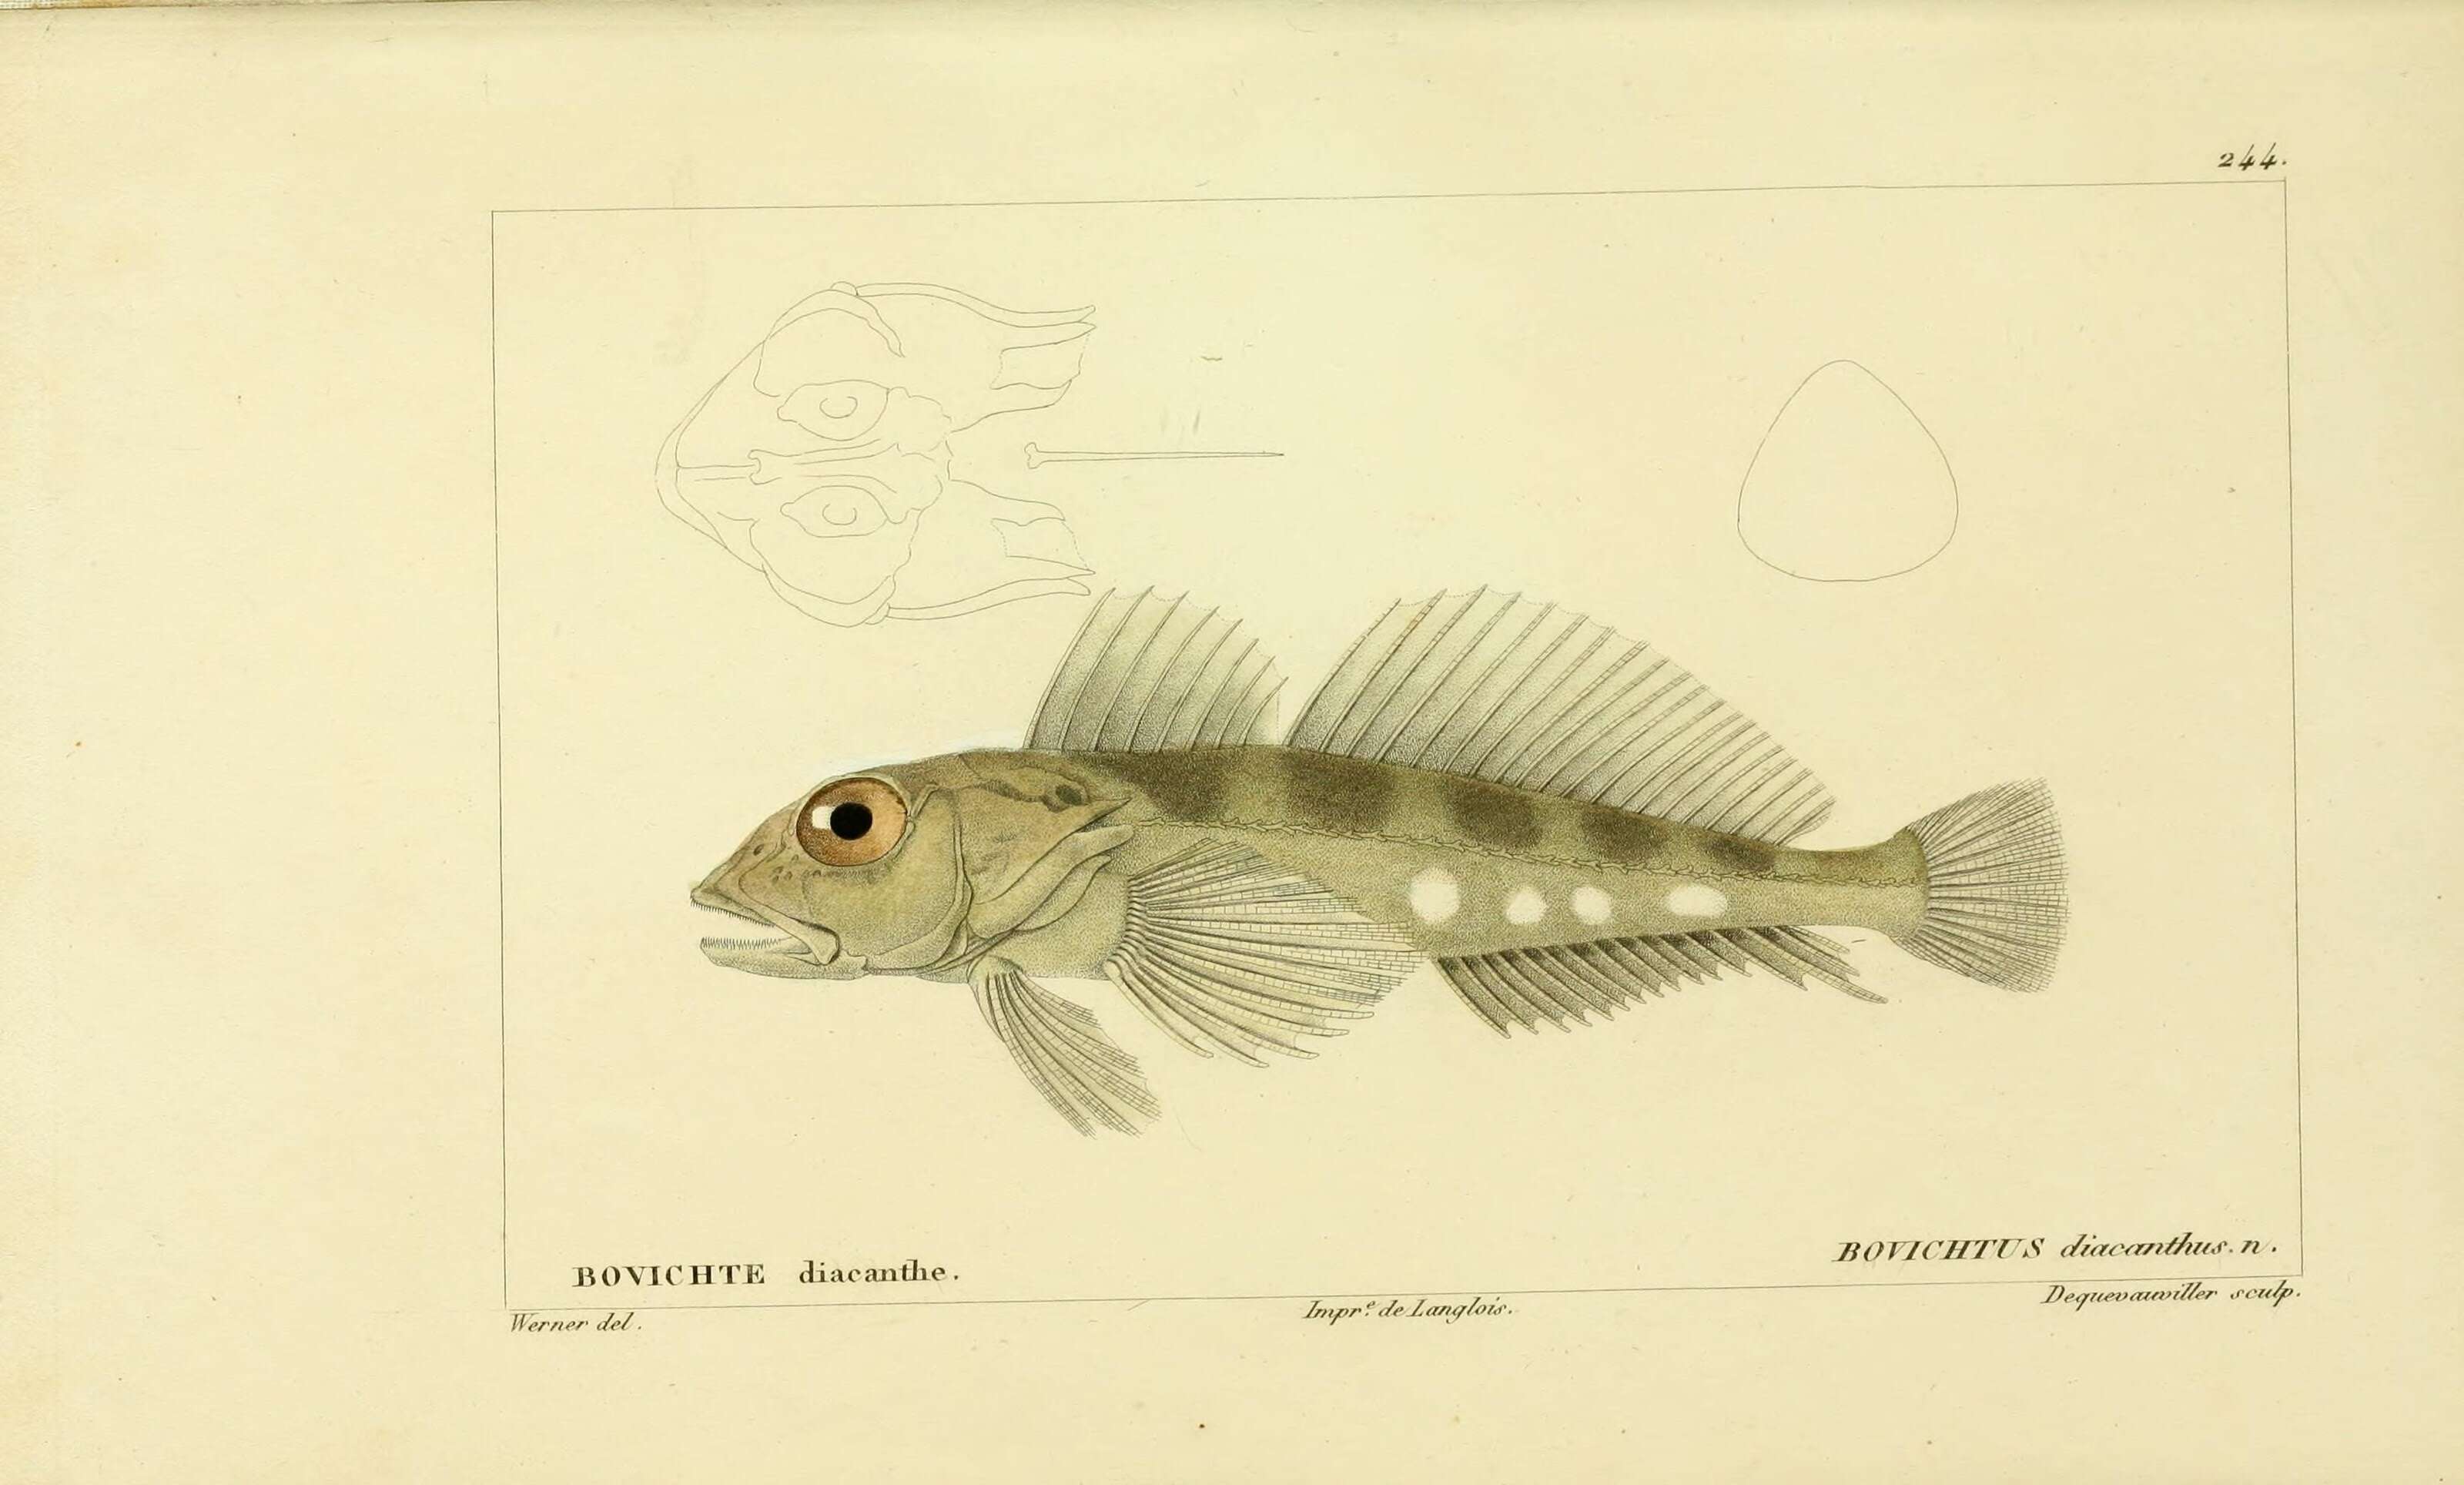 Plancia ëd Bovichtus diacanthus (Carmichael 1819)